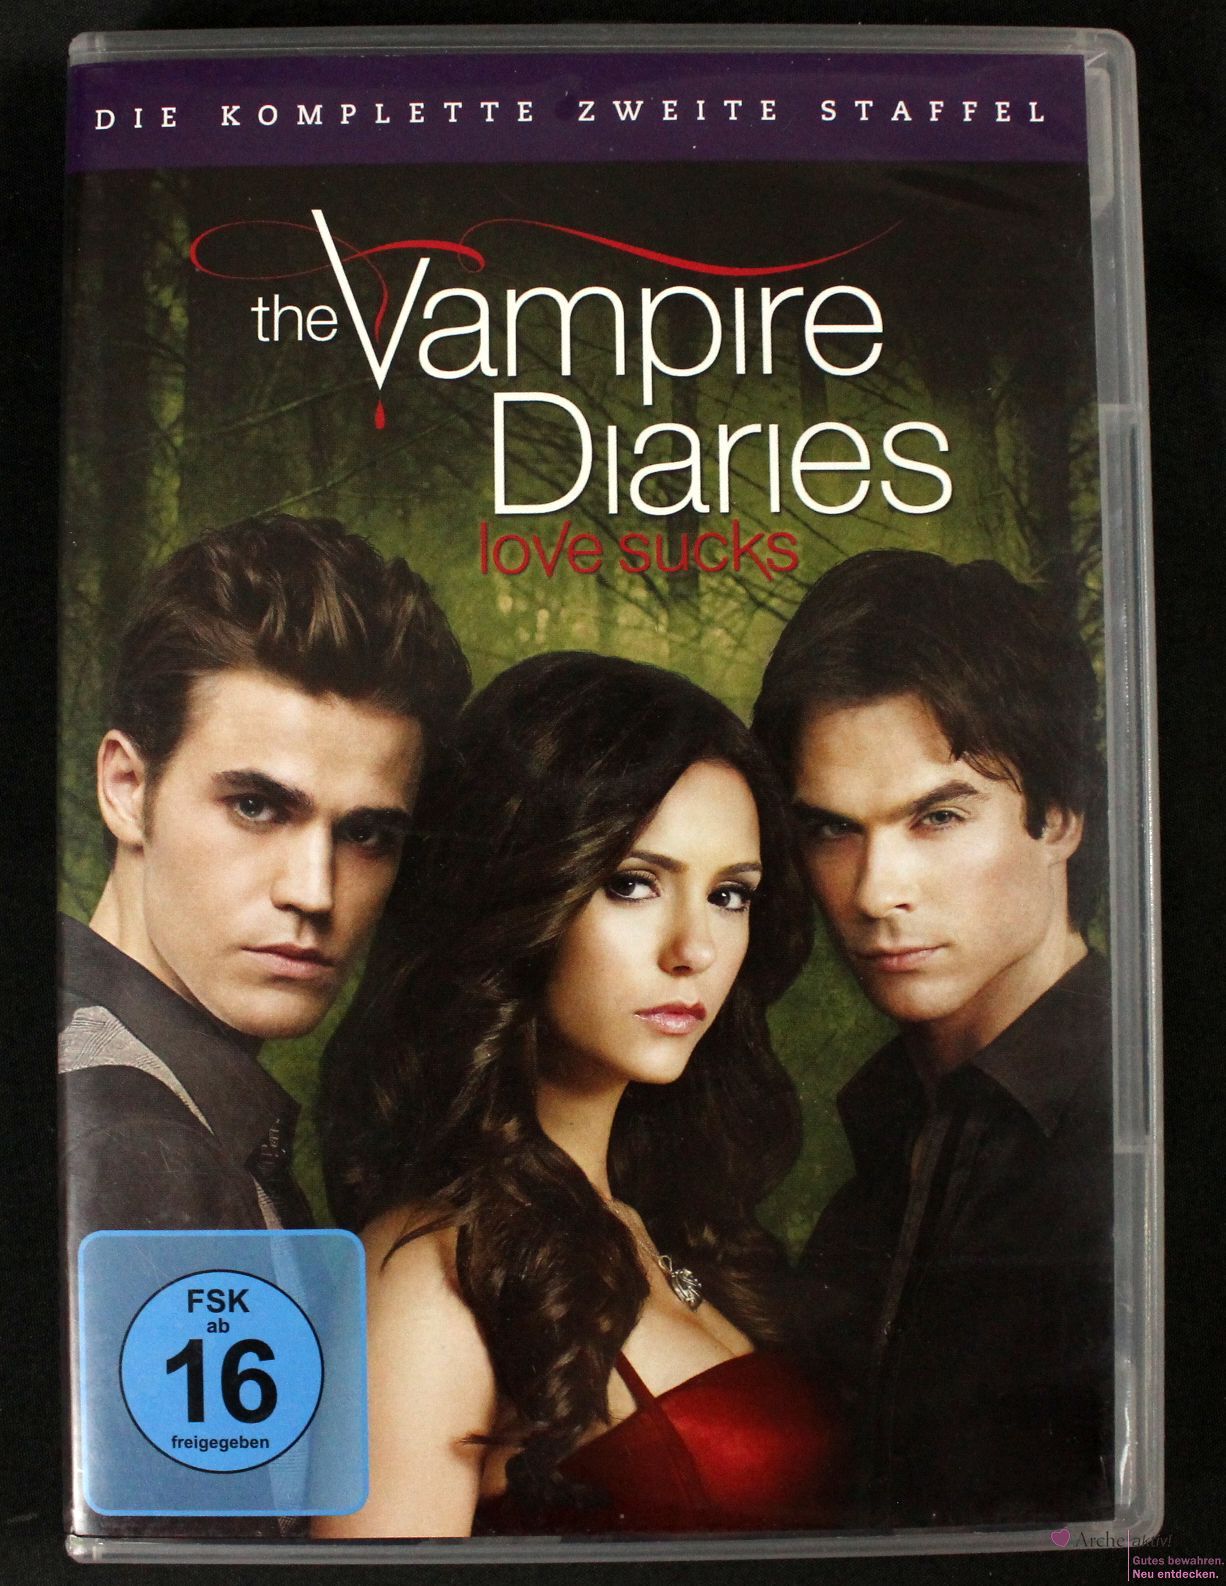 The Vampire Diaries - love sucks - Staffel 2 - 5 DVDs + Bonus Disc - gebraucht